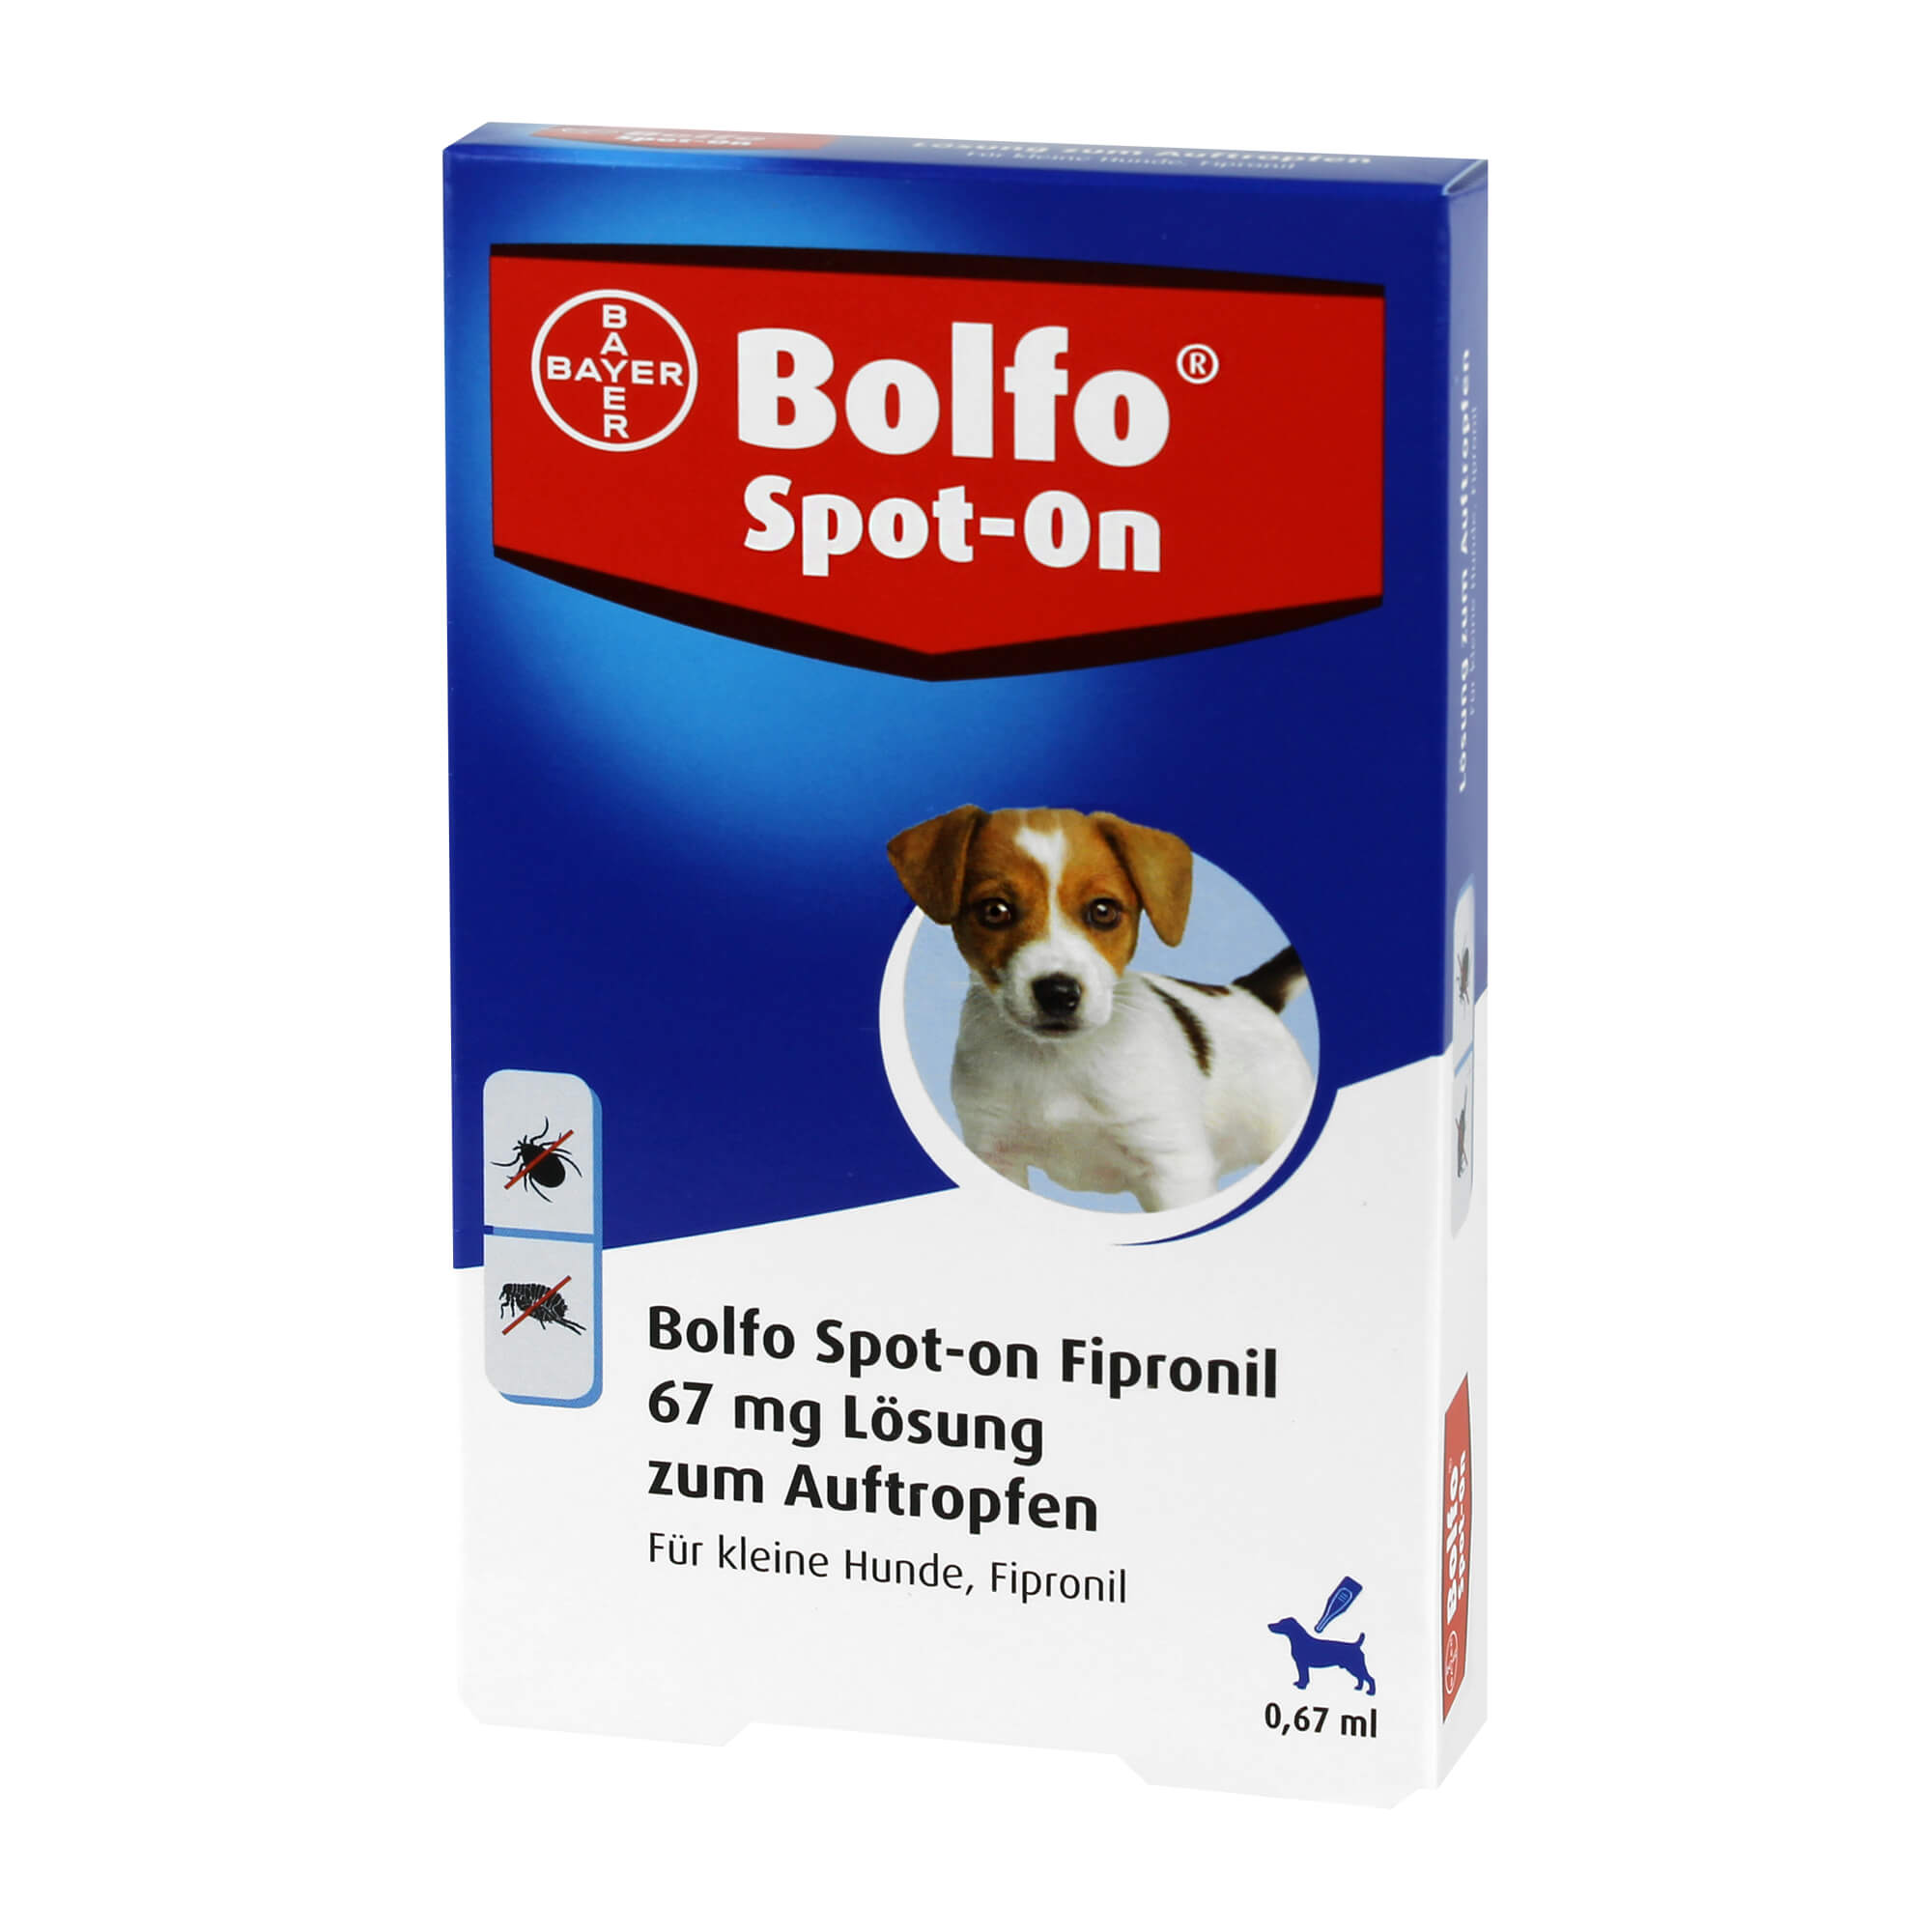 Bolfo Spot-On Fipronil 67 mg für kleine Hunde